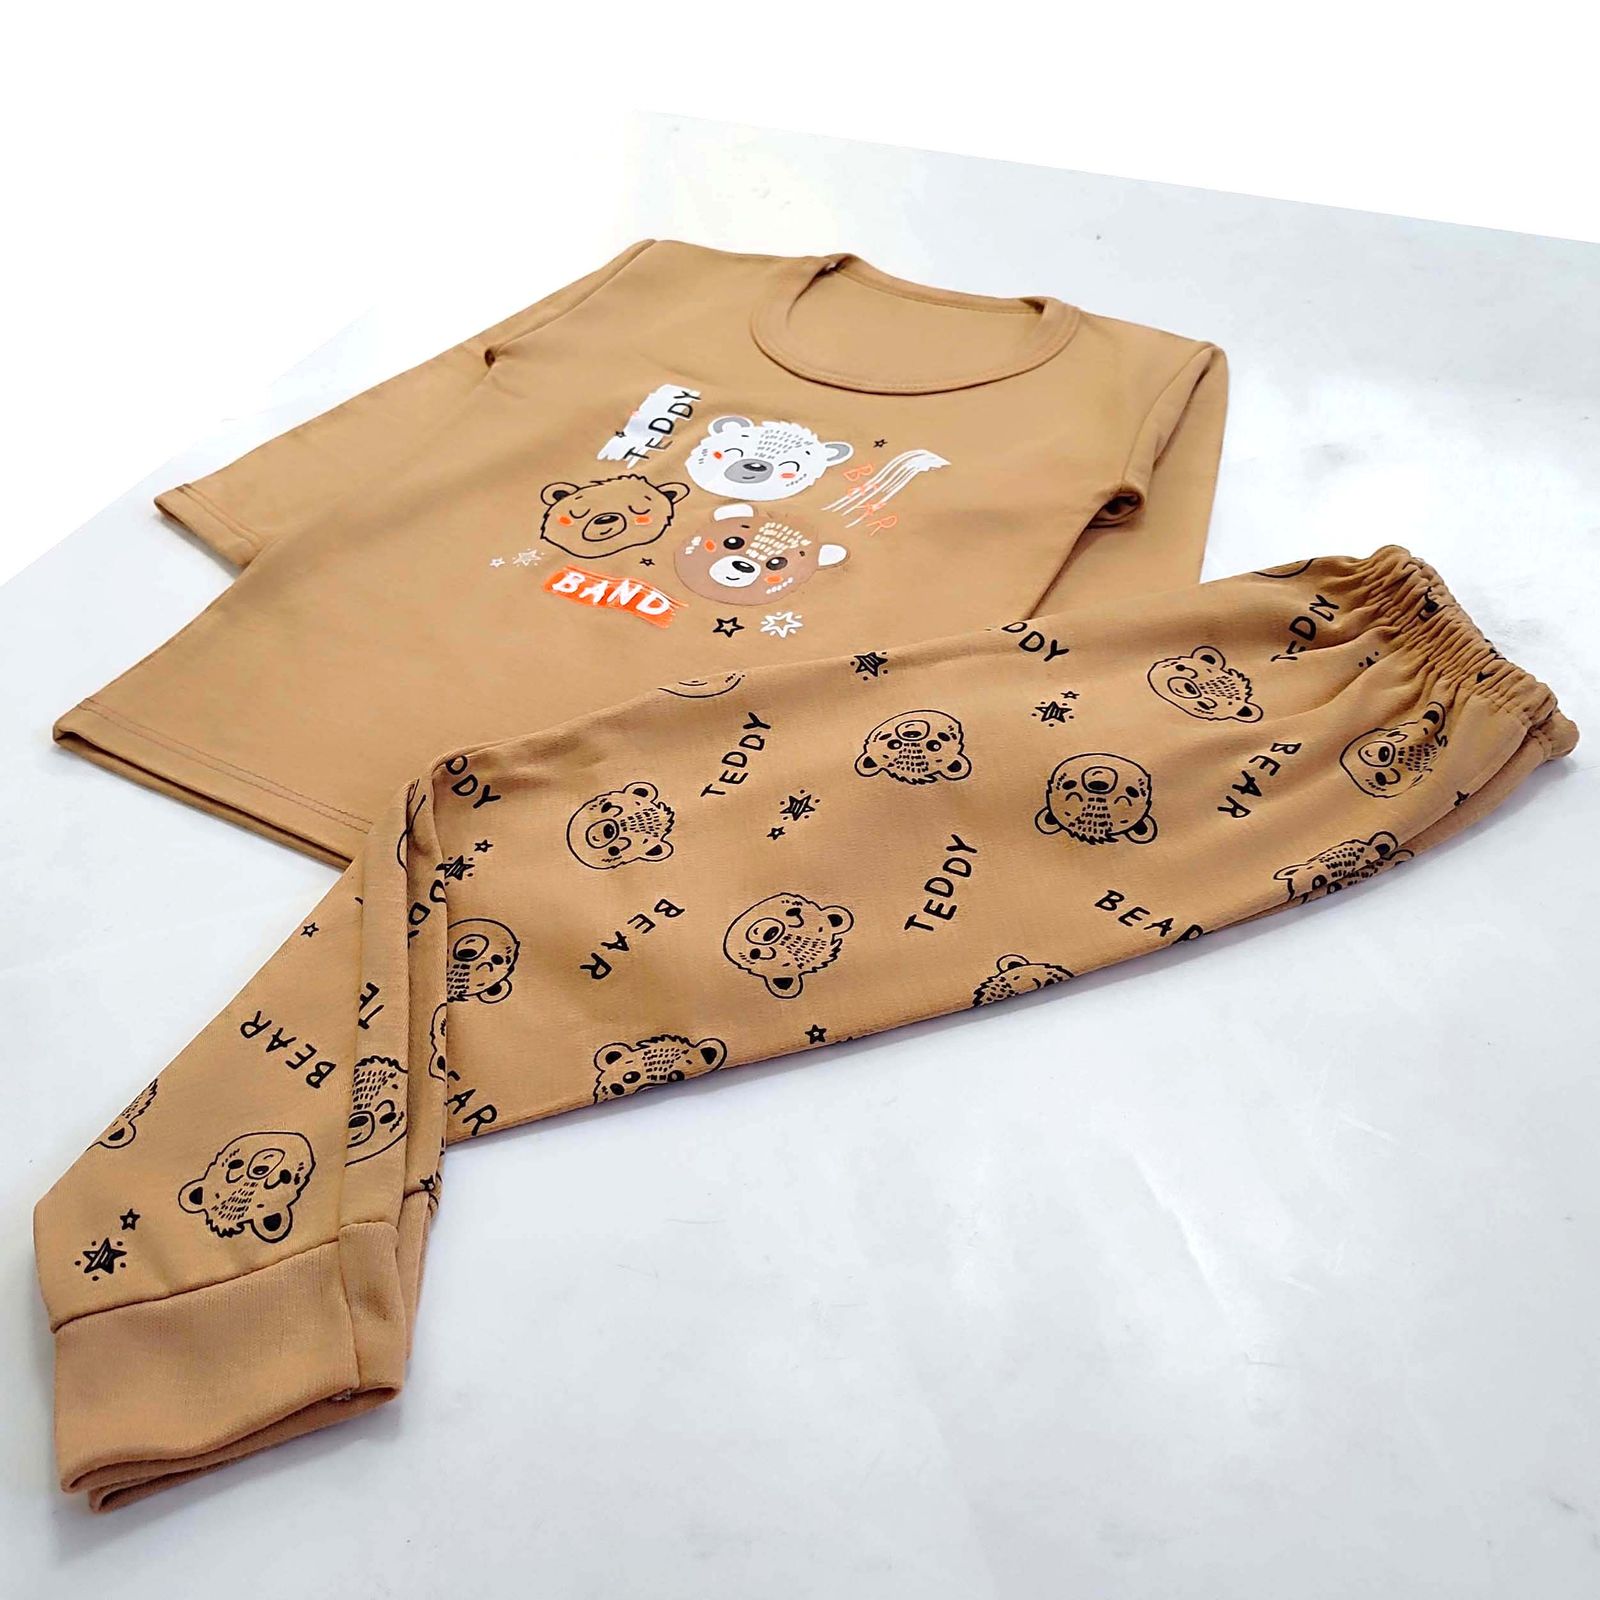 ست تی شرت و شلوار پسرانه مدل کله خرس کد 3927 رنگ نسکافه ای -  - 5